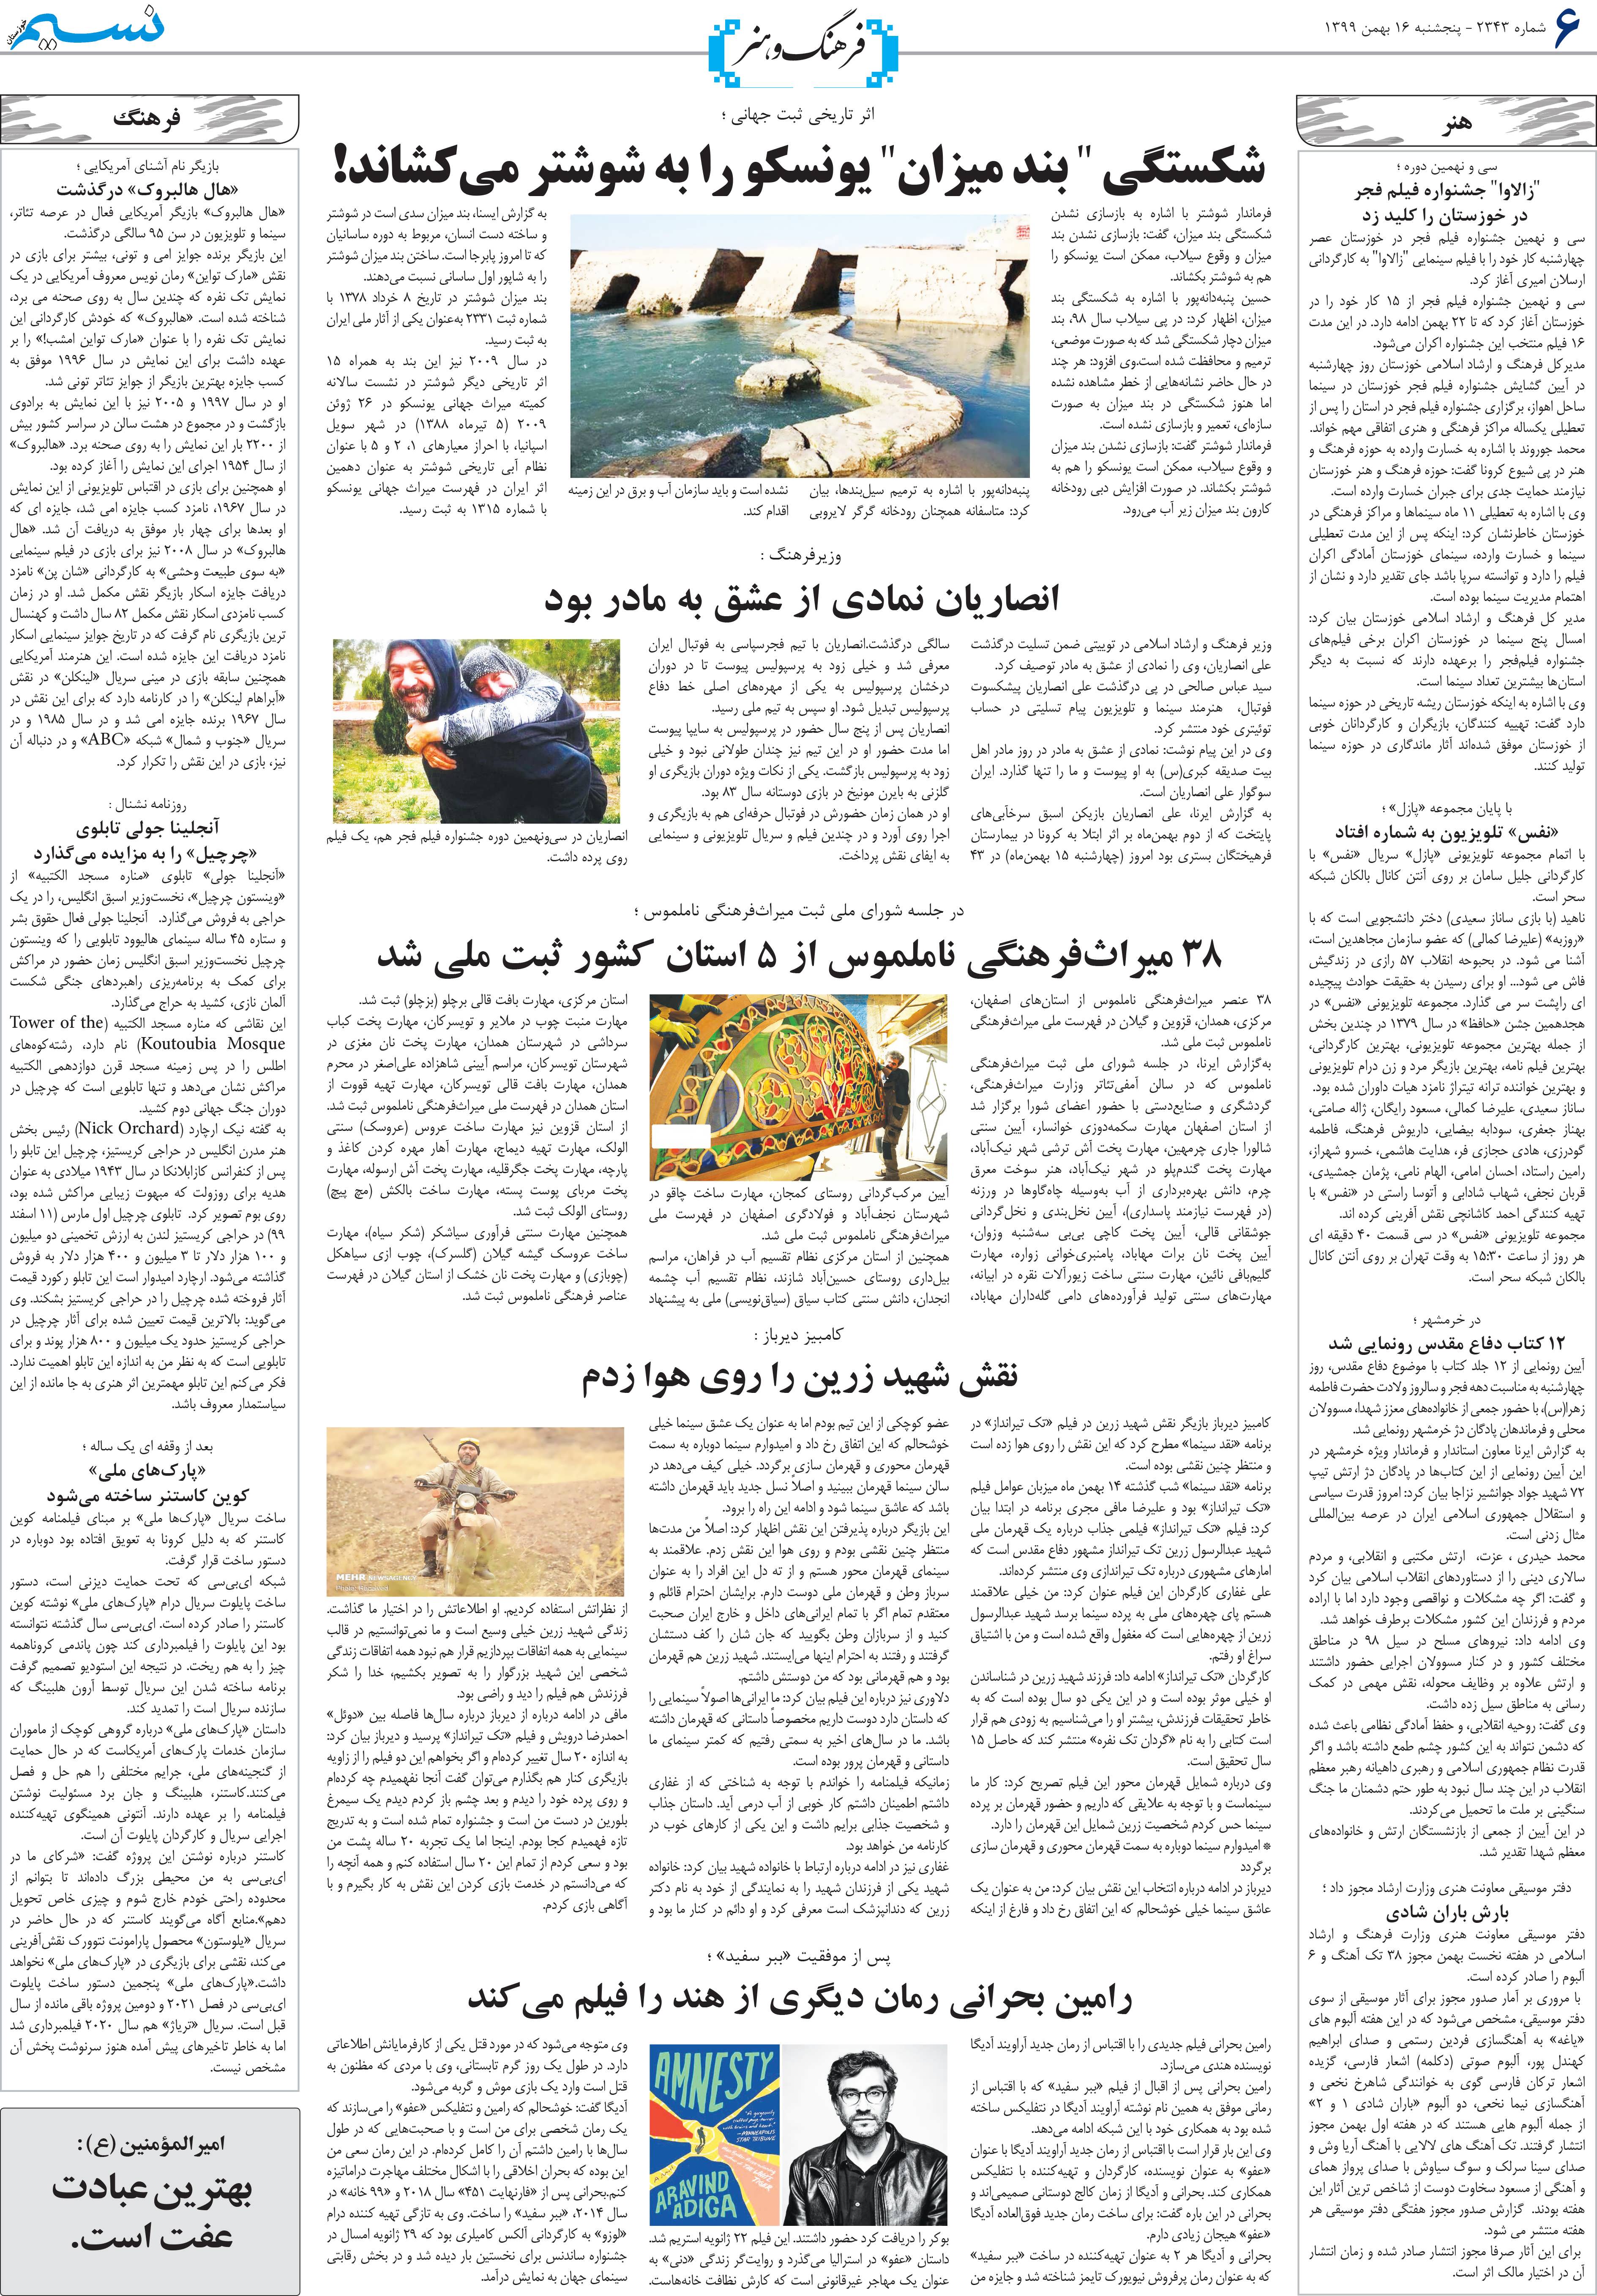 صفحه فرهنگ و هنر روزنامه نسیم شماره 2343